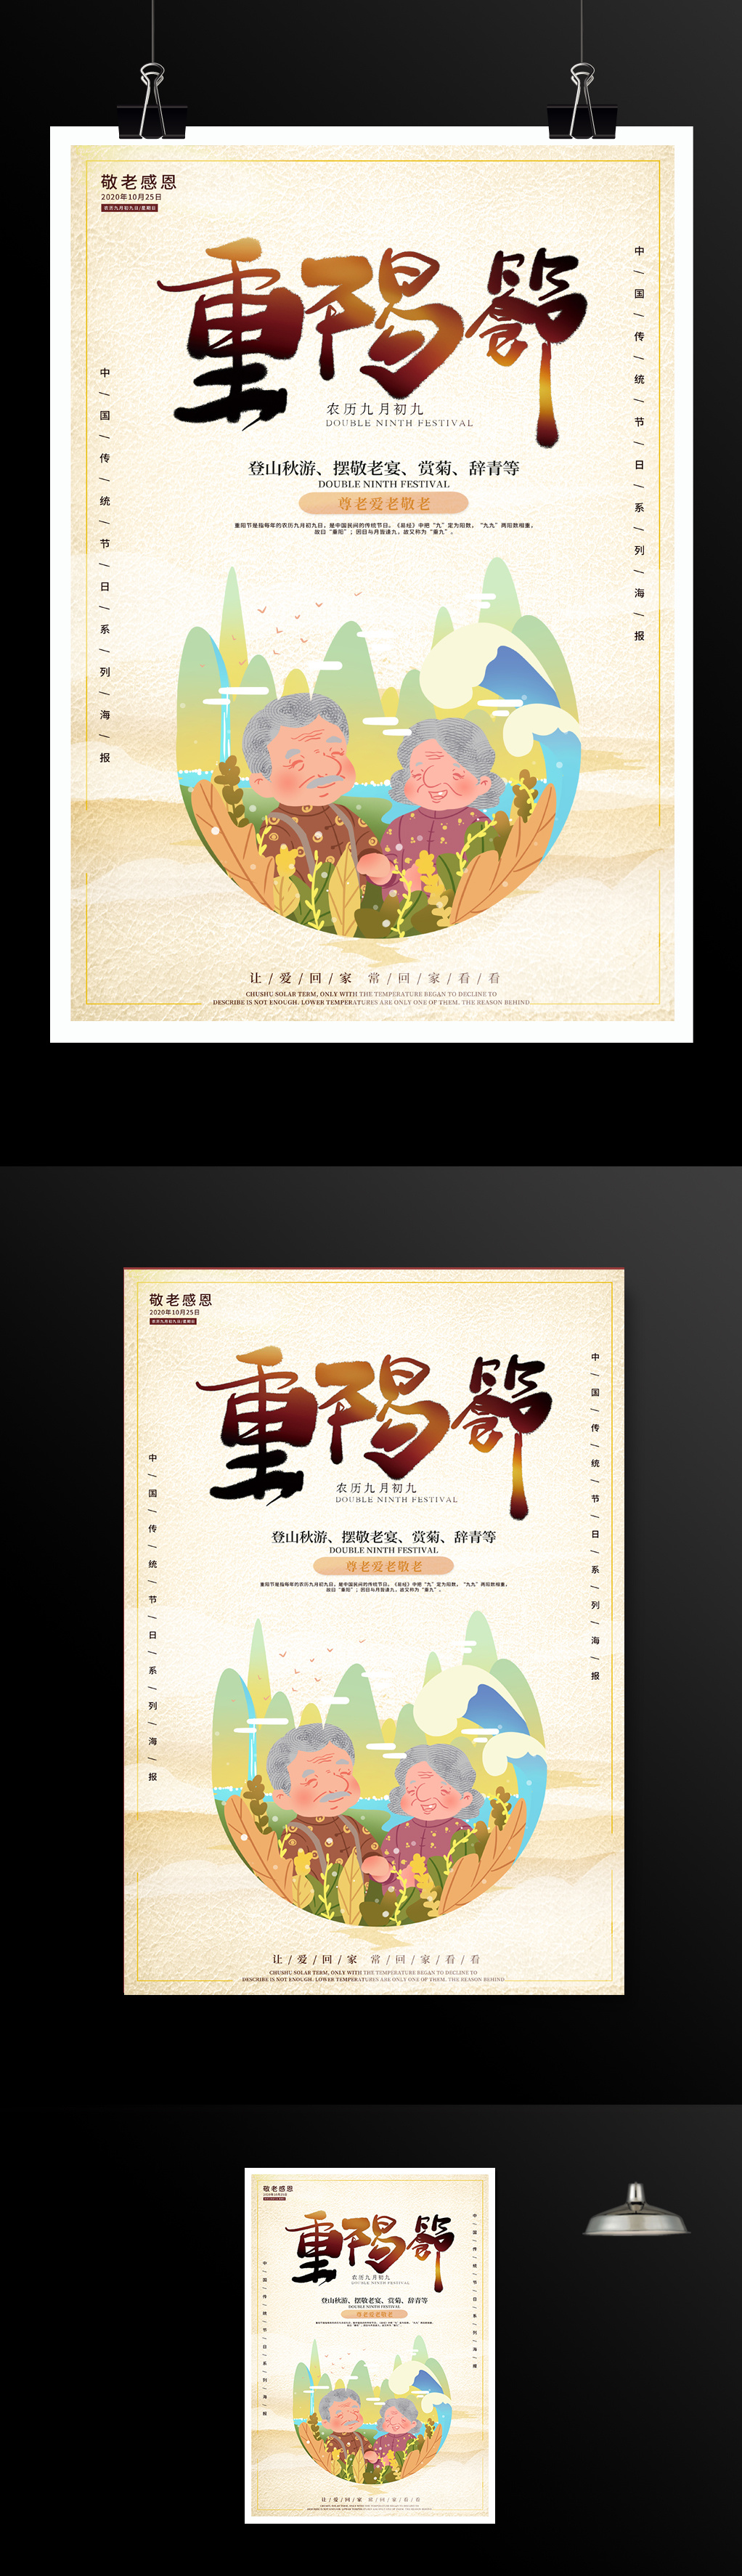  九月初九重阳节宣传海报